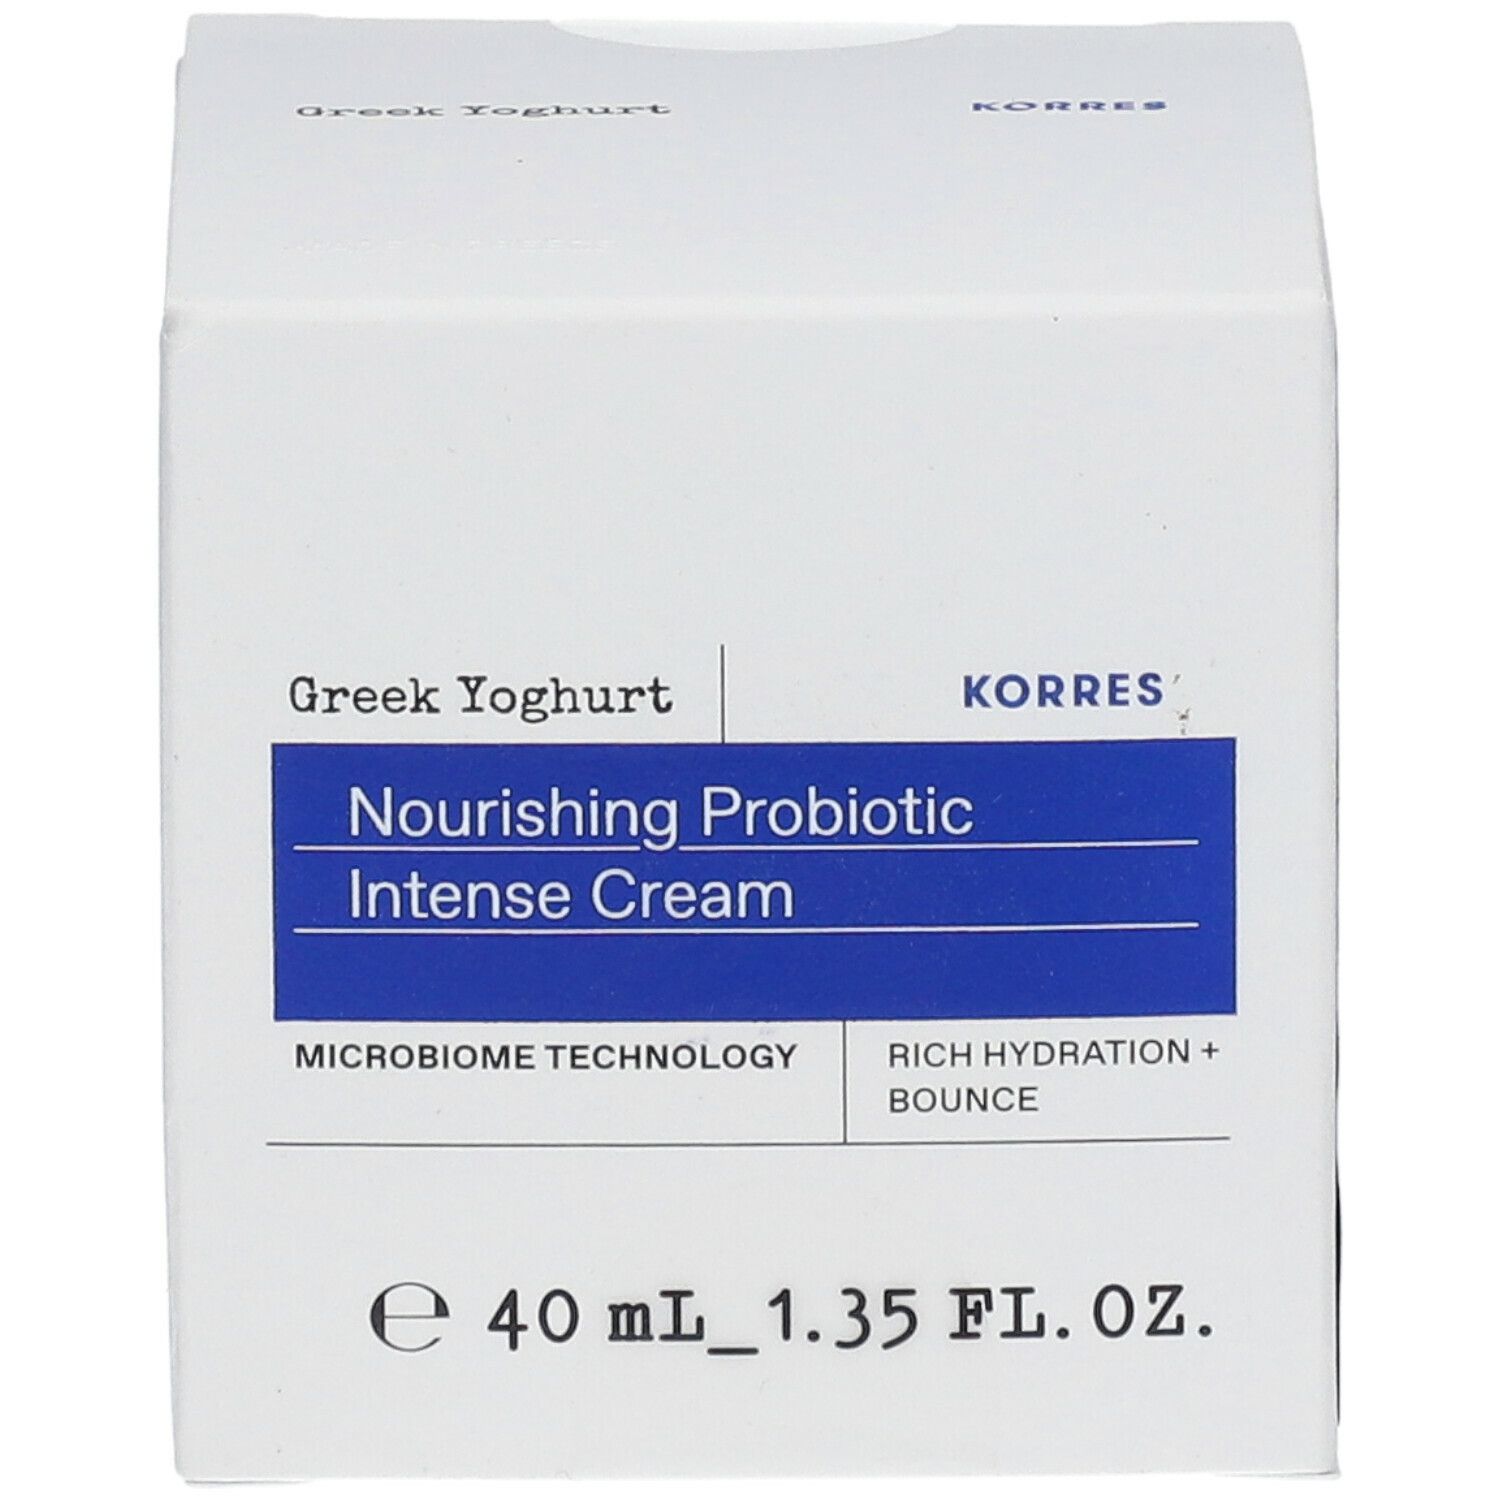 KORRES Greek Yoghurt Intensiv Nährende Probiotische Feuchtigkeitscreme